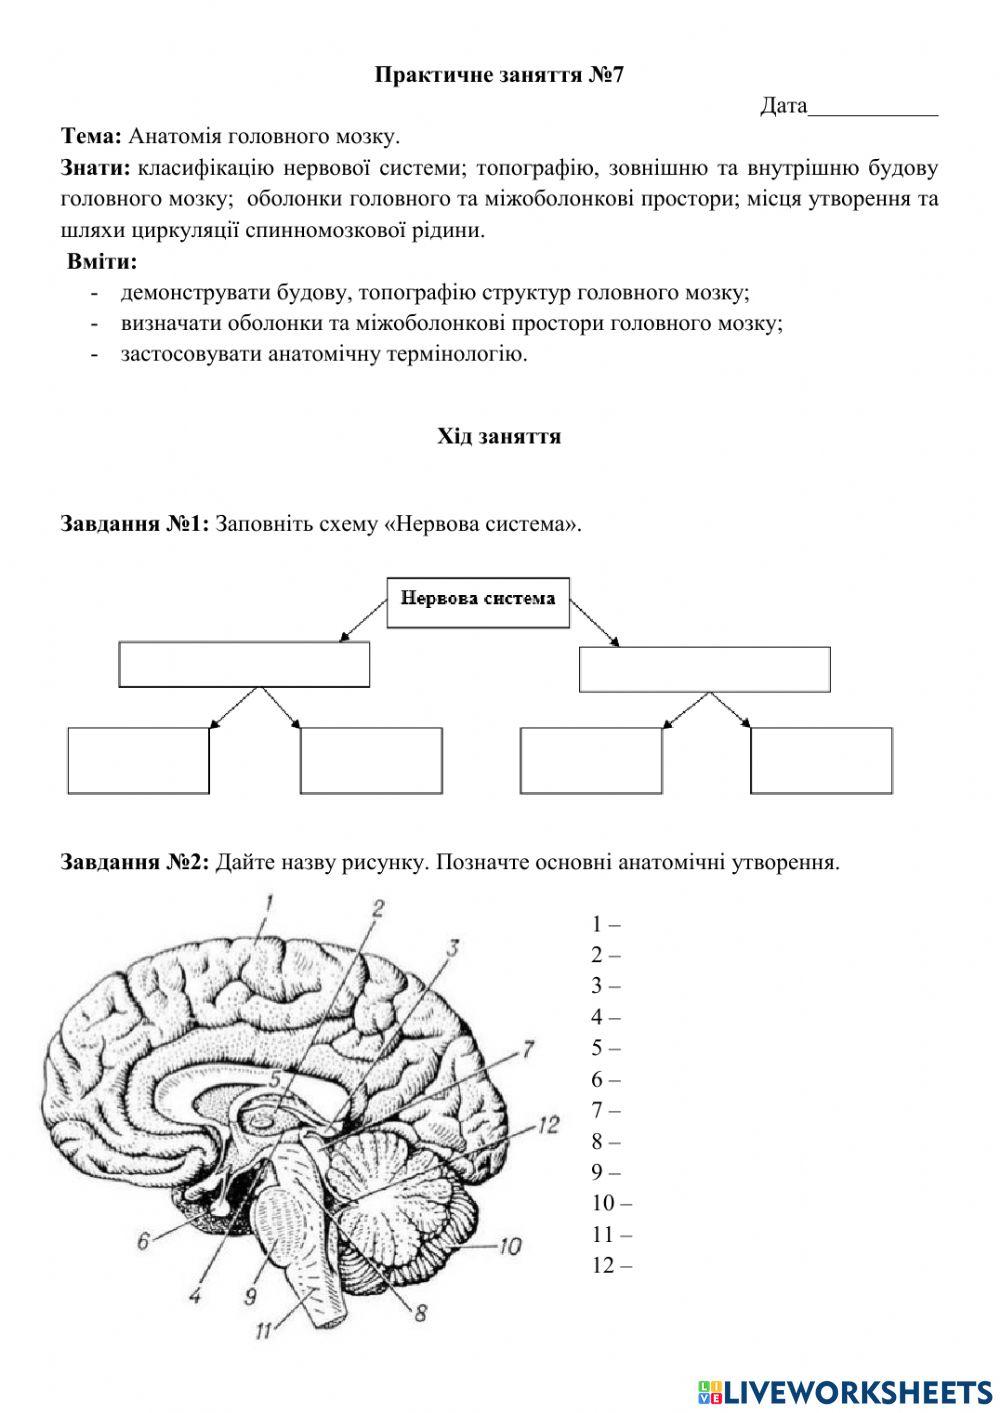 Анатомія головного мозку